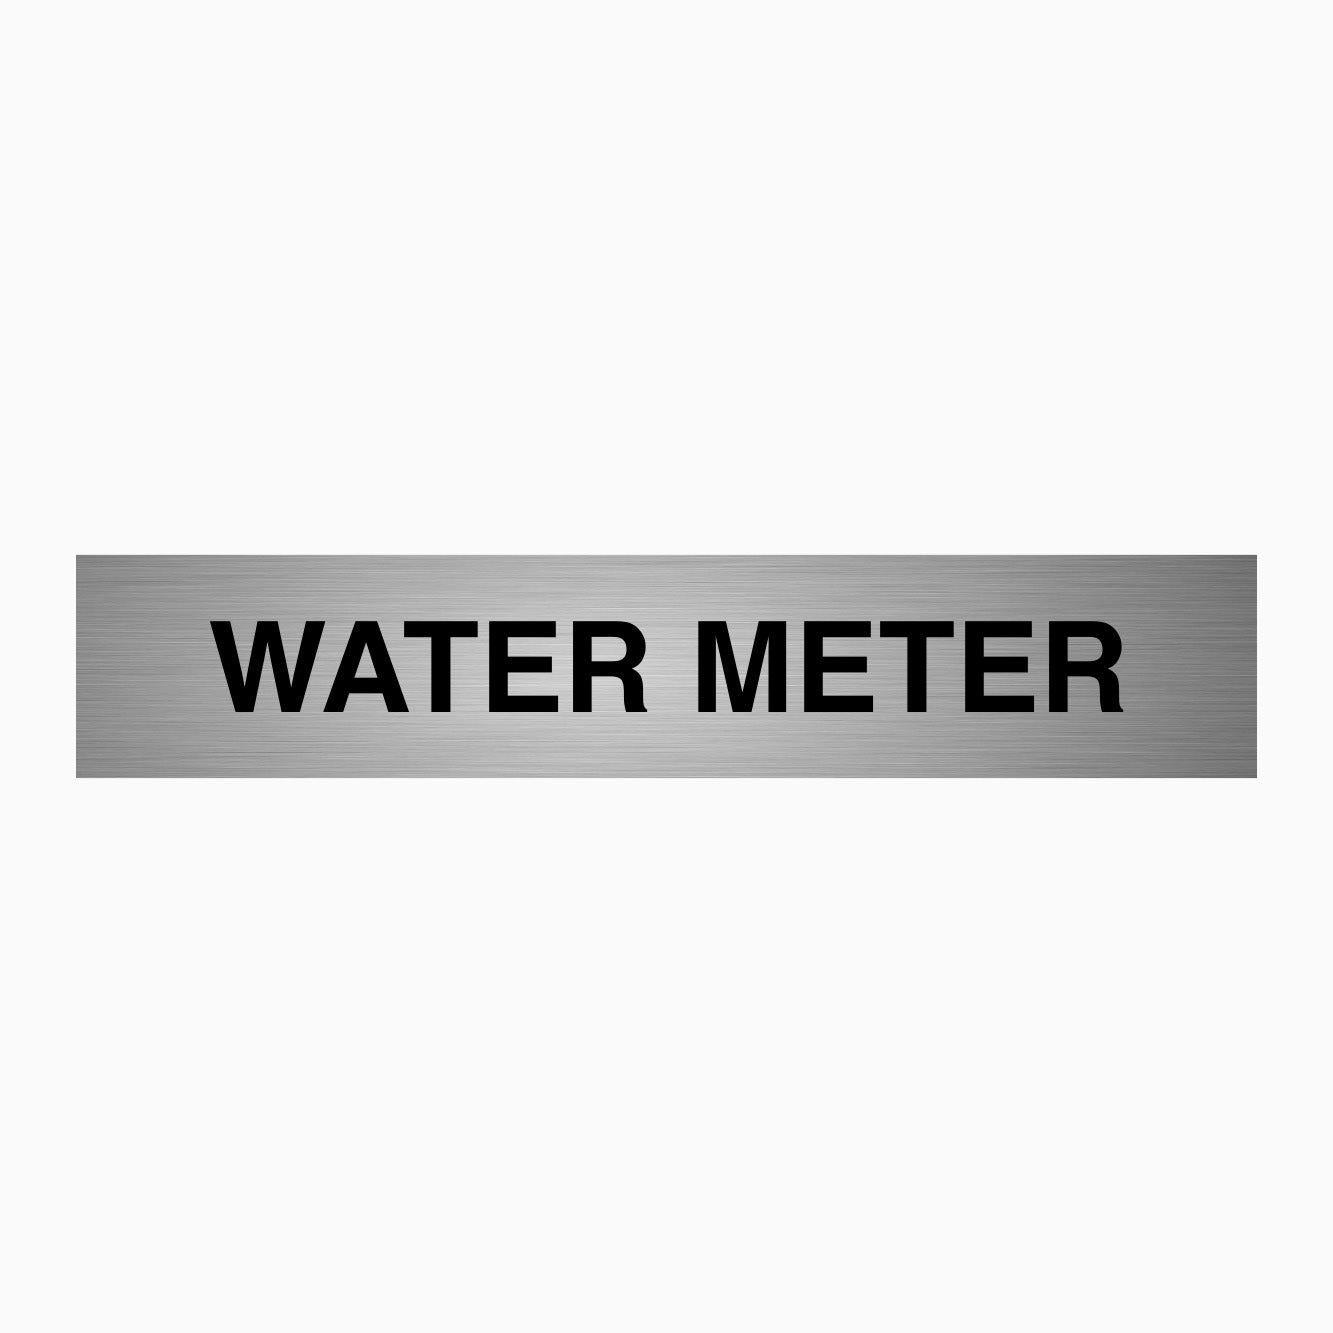 WATER METERS SIGN